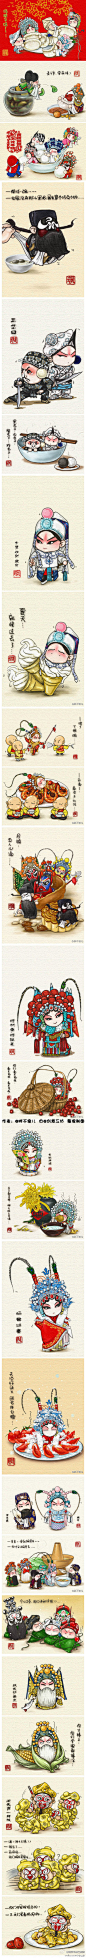 南京市演艺集团：#小艺资讯#【"舌尖上的京剧"漫画走红】黑脸包公是芝麻元宵；白娘子、许仙和小青分别变身奶油蛋糕、紫薯团以及青团子…近日，网友@胖不墩儿 在网上发布了一组18幅的“舌尖上的京剧”系列漫画，将传统的京剧与美食巧妙地“混搭”在一起。http://t.cn/zjWrz4n via @新华网